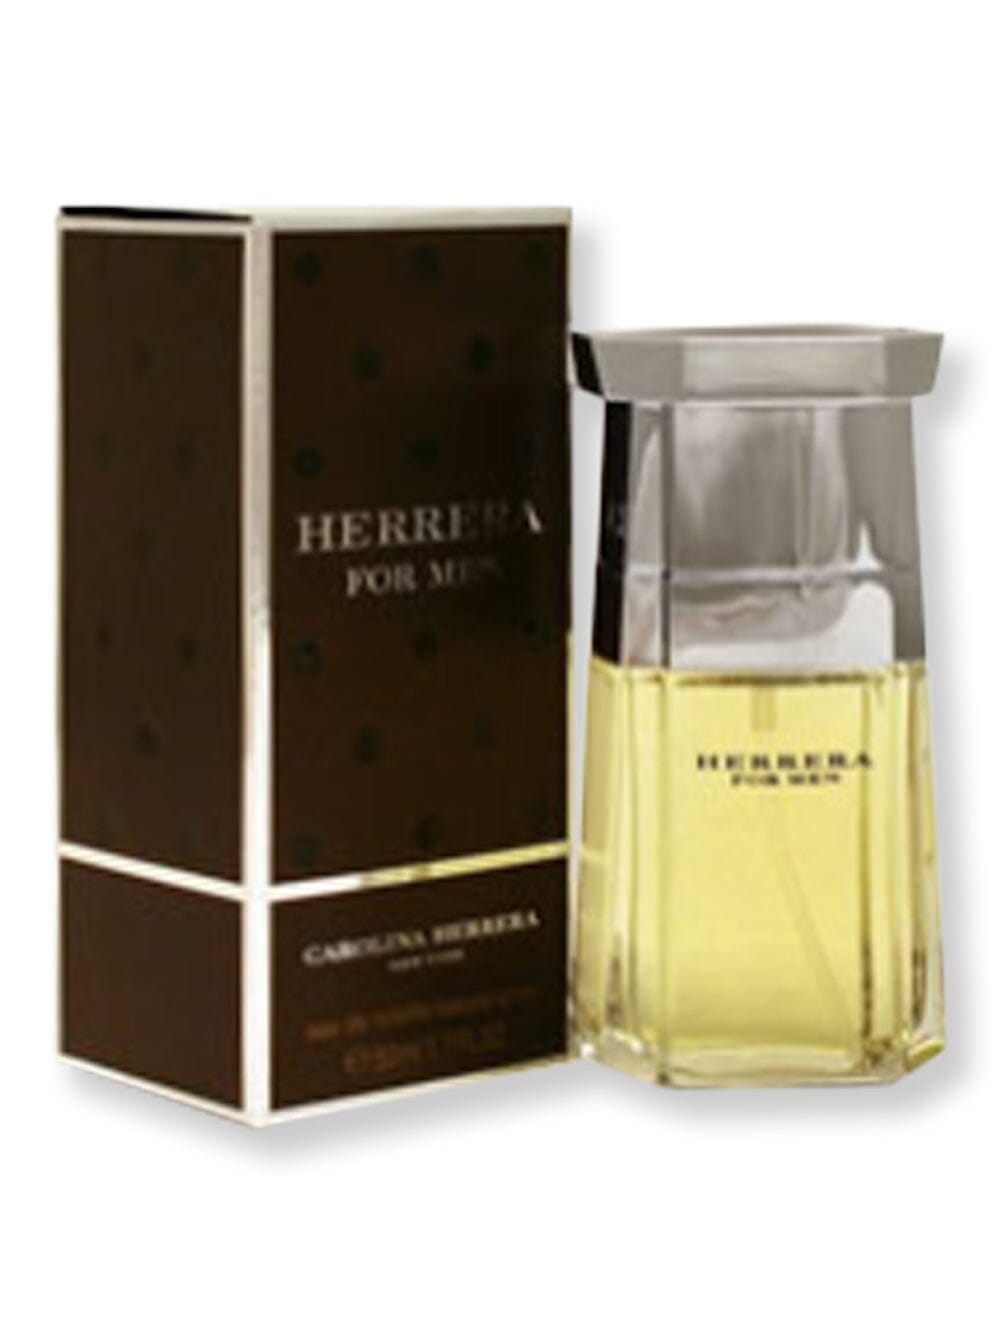 Carolina Herrera Carolina Herrera Herrera Men EDT Spray 1.7 oz Perfume 